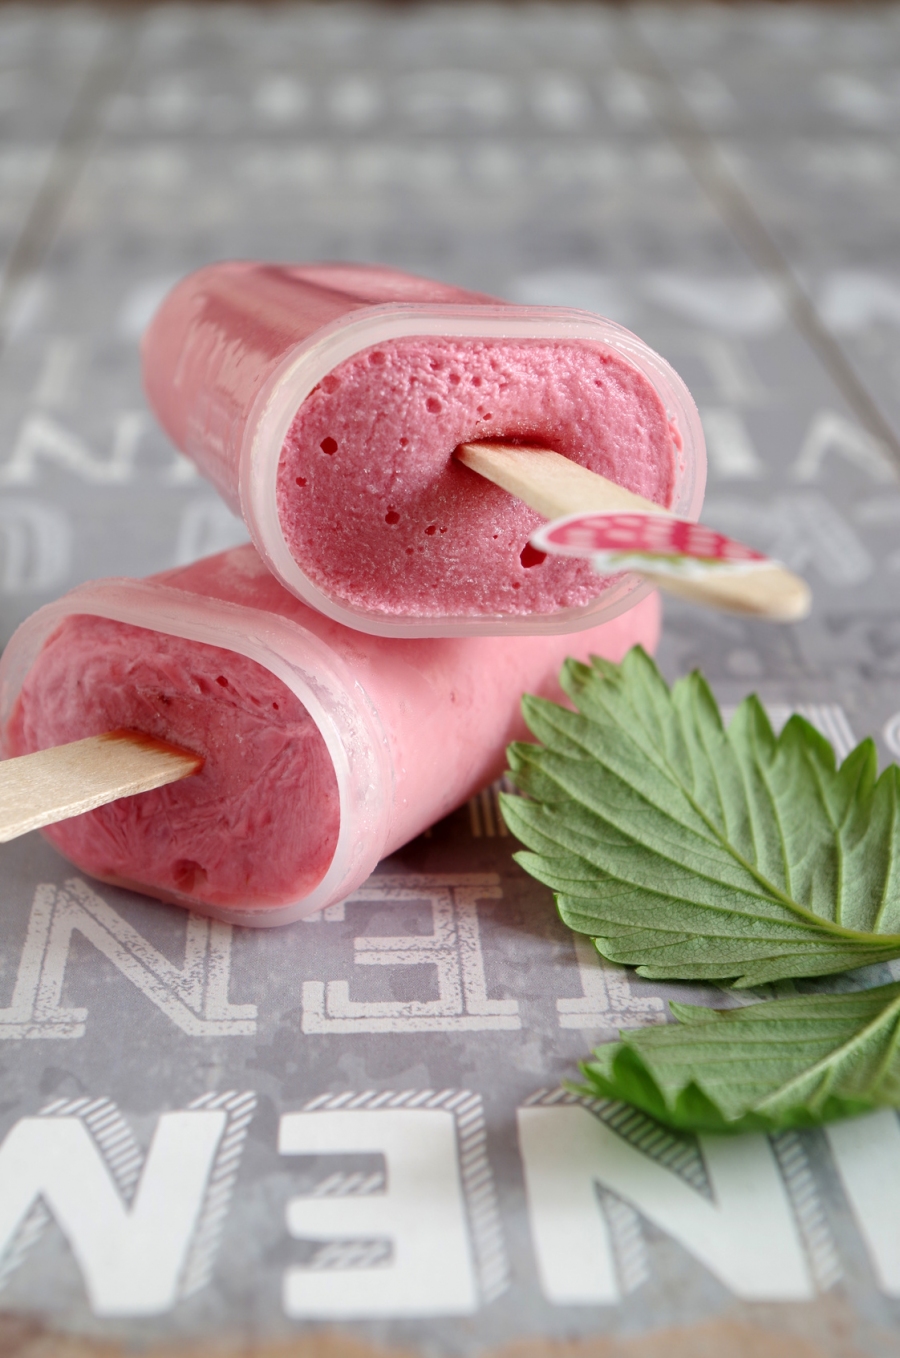 Superschnell zubereitetes Joghurt-Früchte-Eis: Eine gesunde Alternative zu herkömmlichem Eis! 